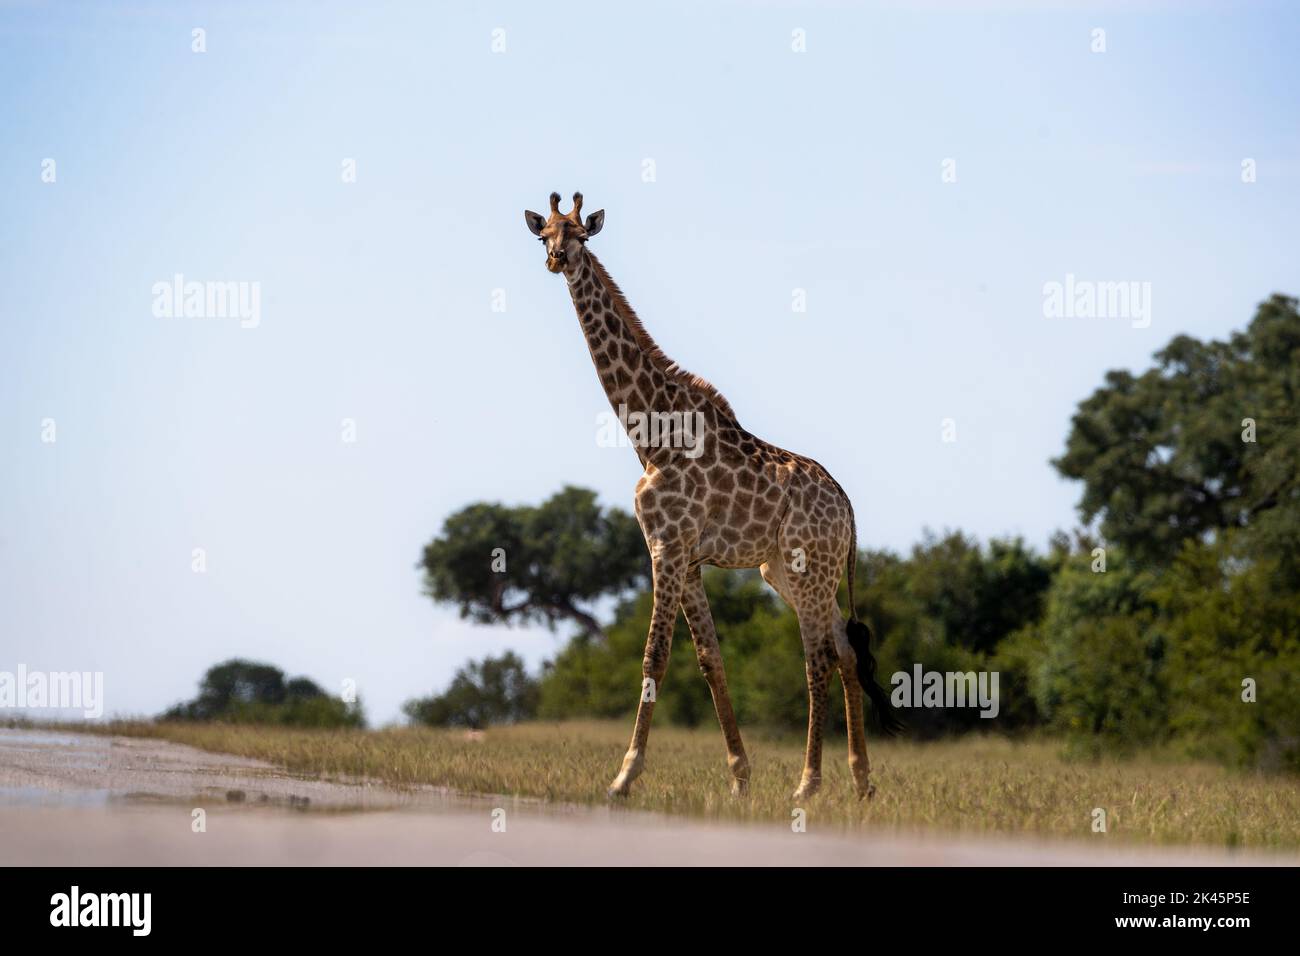 Una jirafa, Giraffa, está de pie en hierba corta y mira hacia adelante Foto de stock